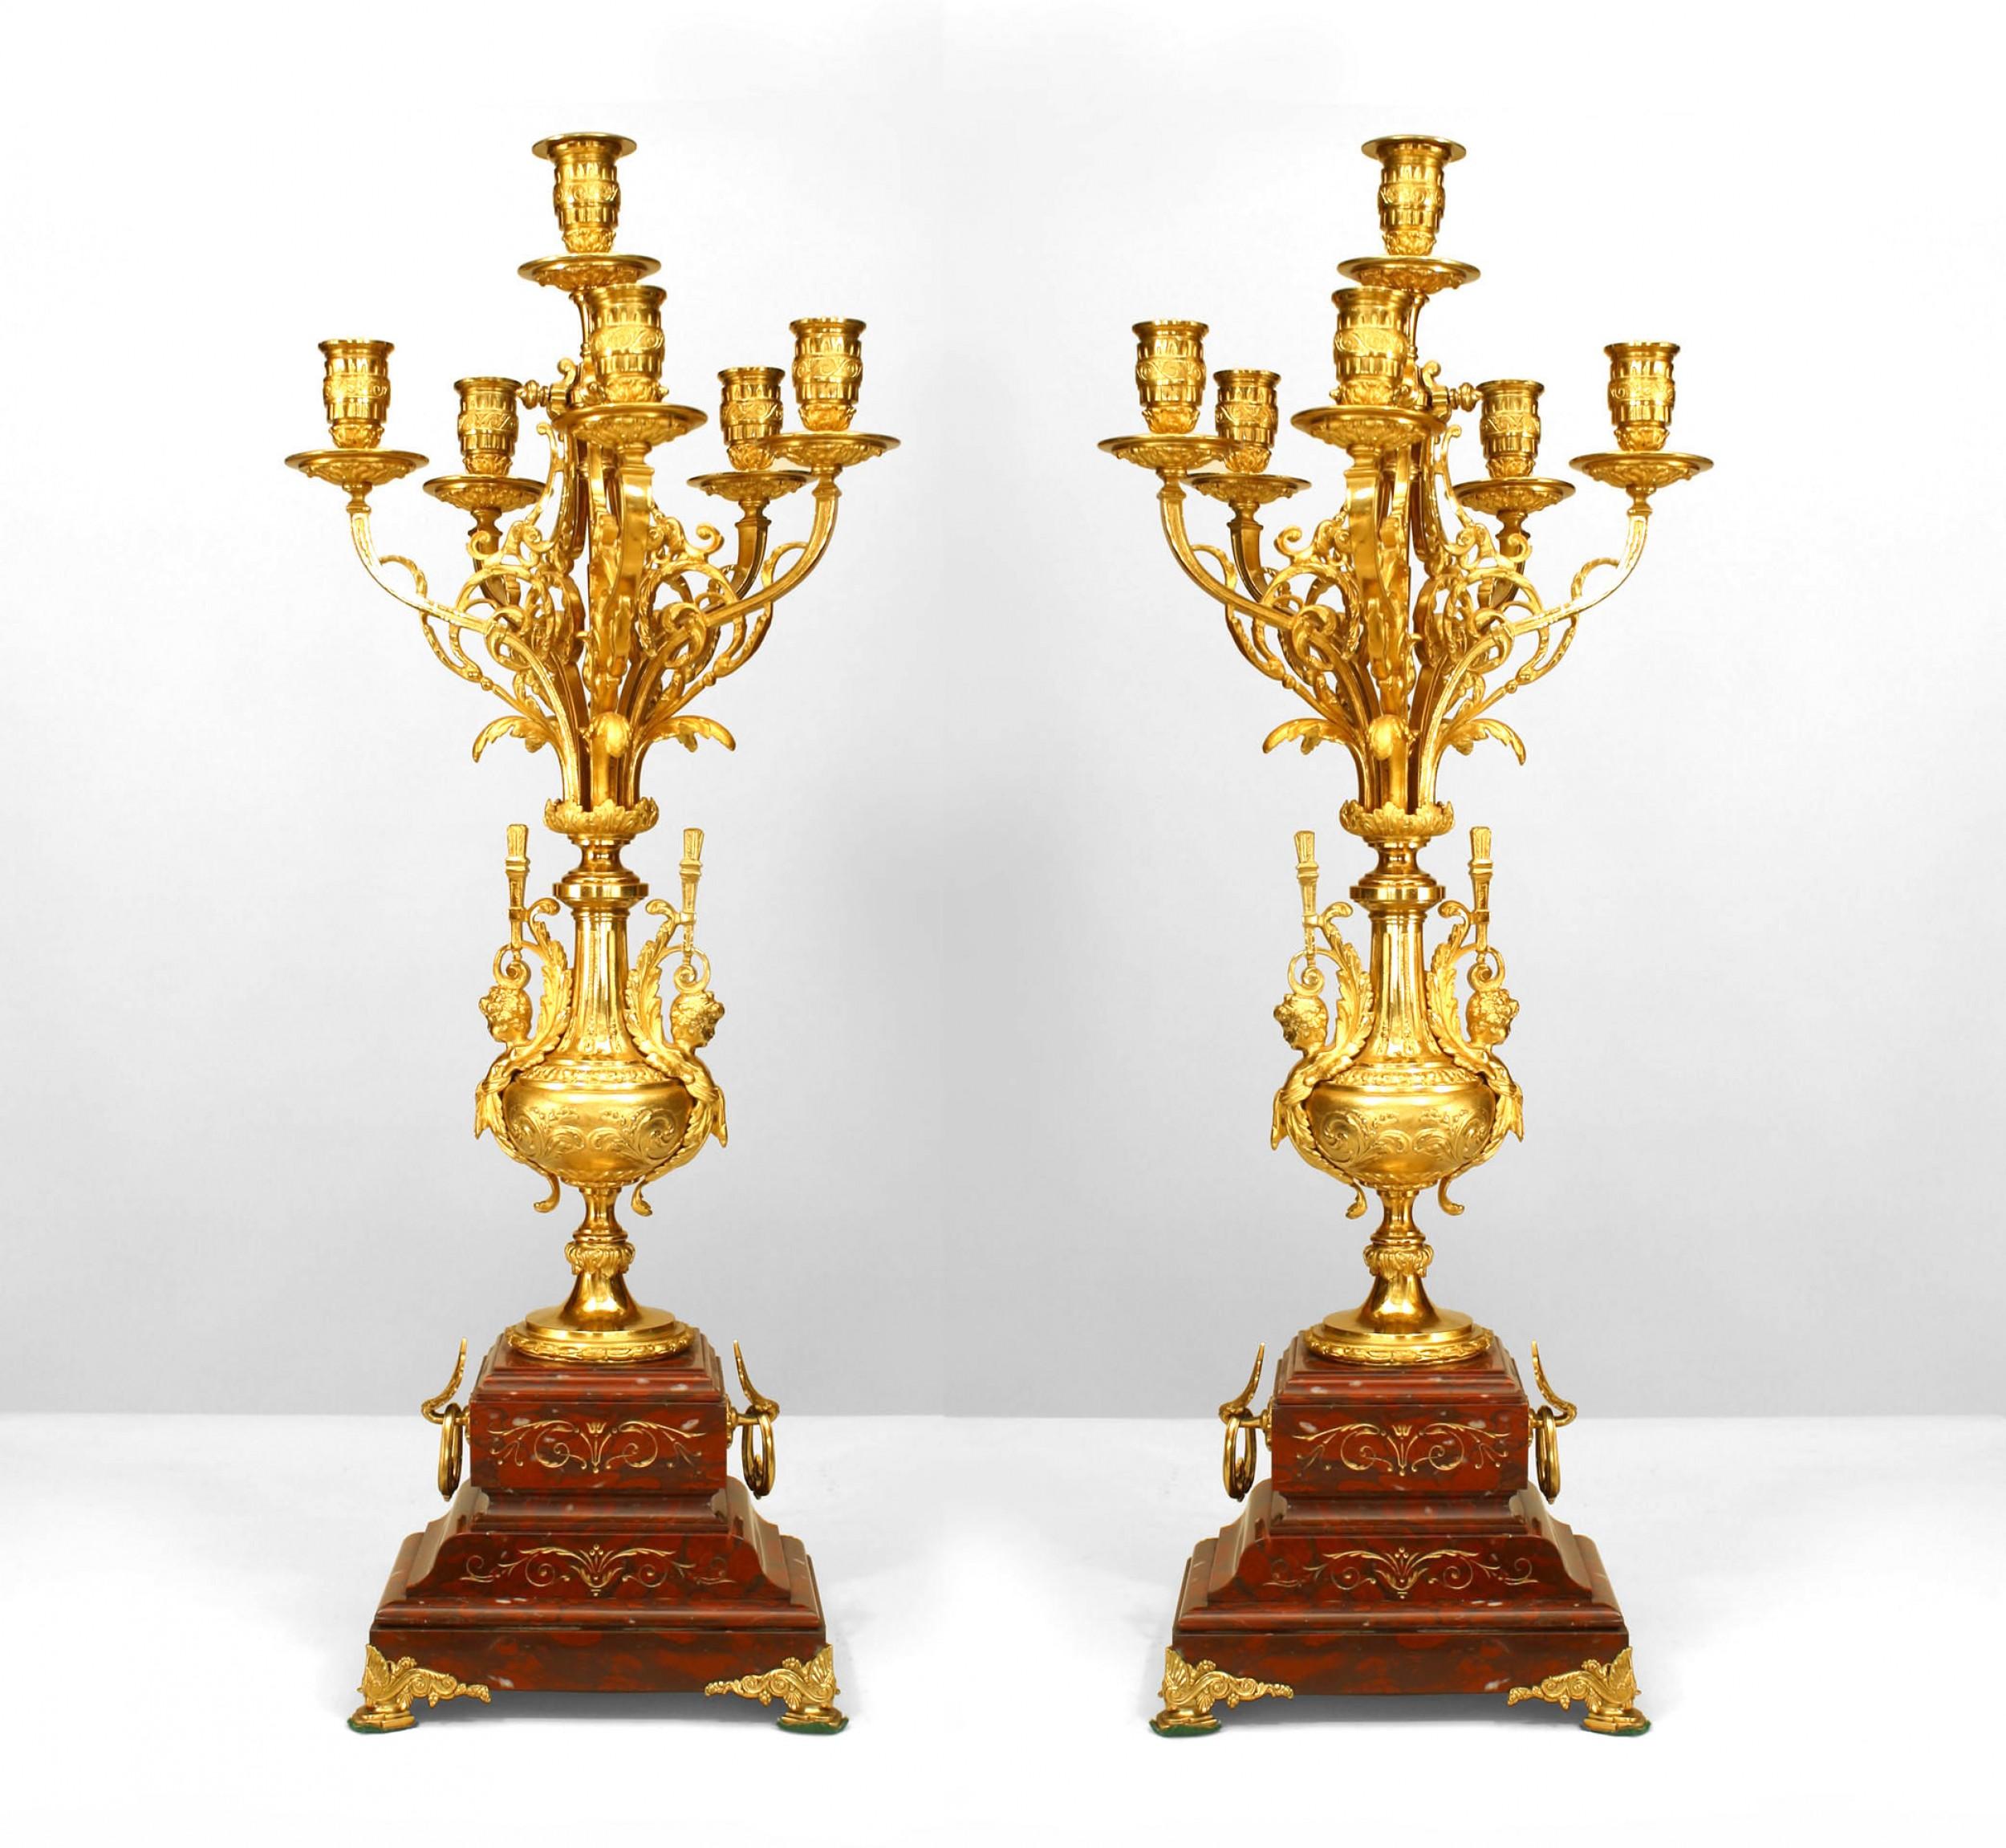 PAAR französischer viktorianischer 6-armiger Kandelaber aus rotem Marmor und vergoldeter Bronze mit einer Urne aus vergoldeter Bronze auf einem gestuften Sockel (PREIS PRO PARE)
